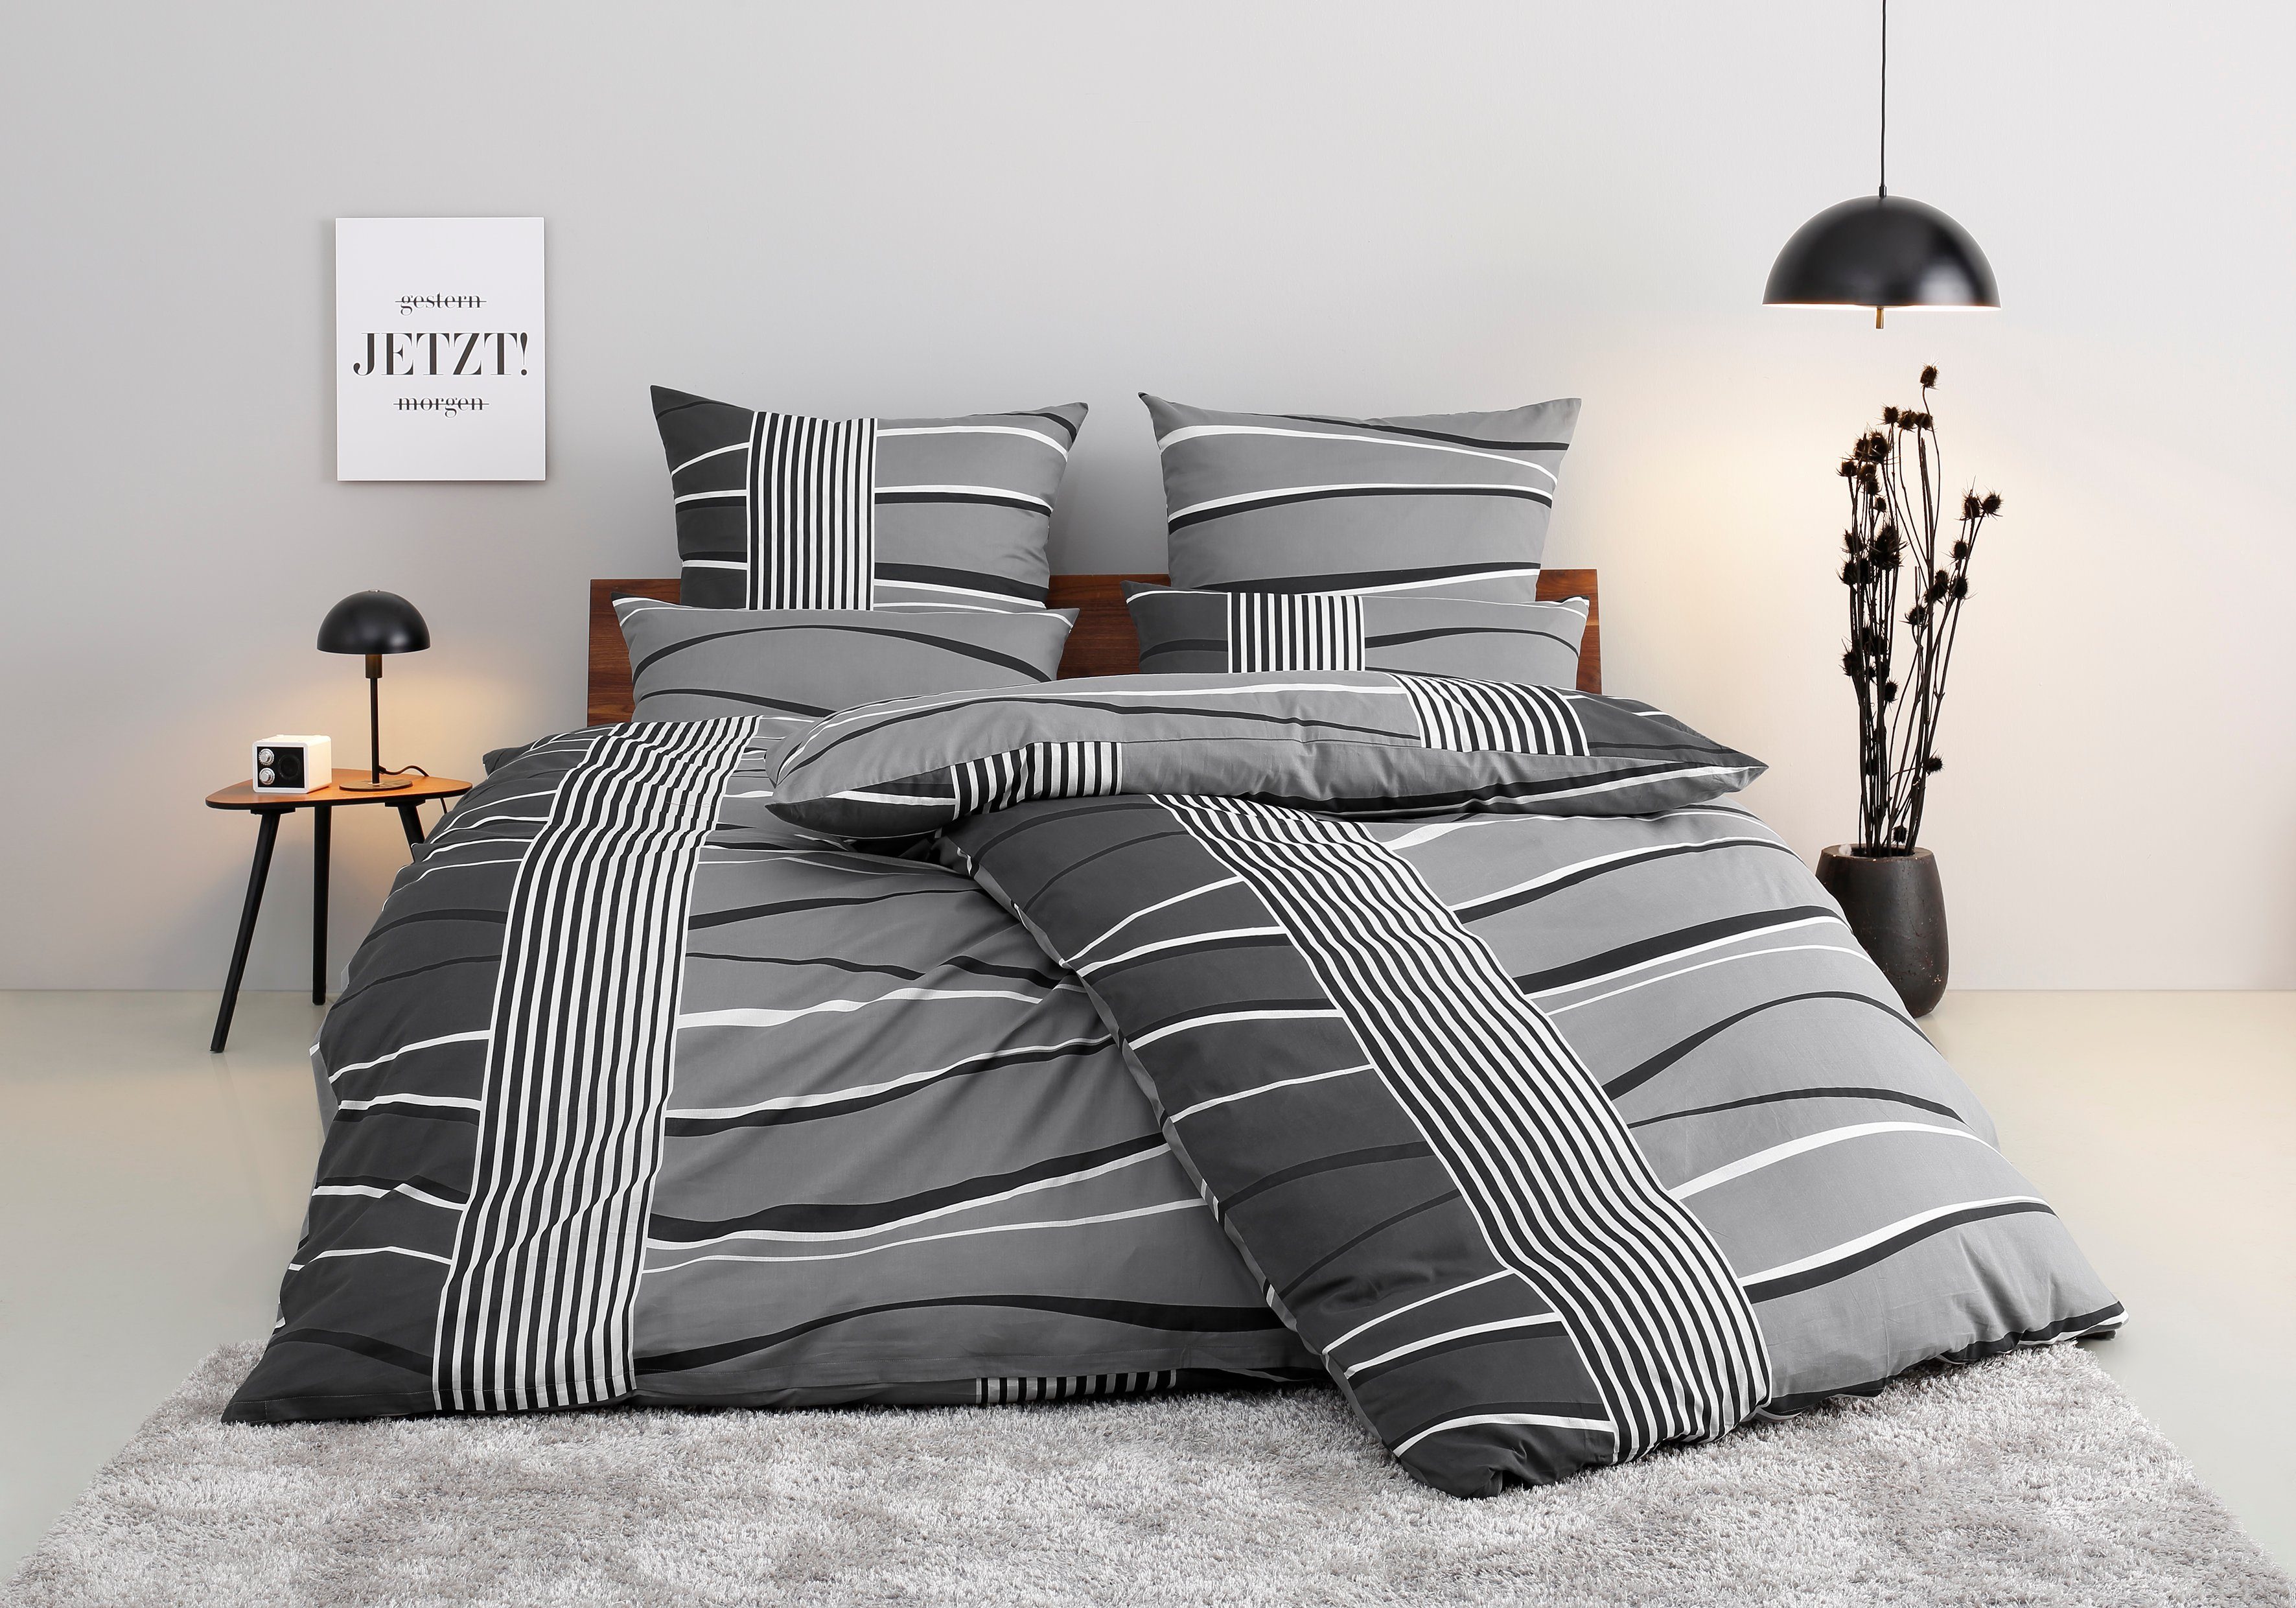 Bettwäsche Renu in Gr. 135x200 oder 155x220 cm, my home, Linon, 2 teilig, Bettwäsche aus Baumwolle, grafische Bettwäsche mit Wellen-Design grau